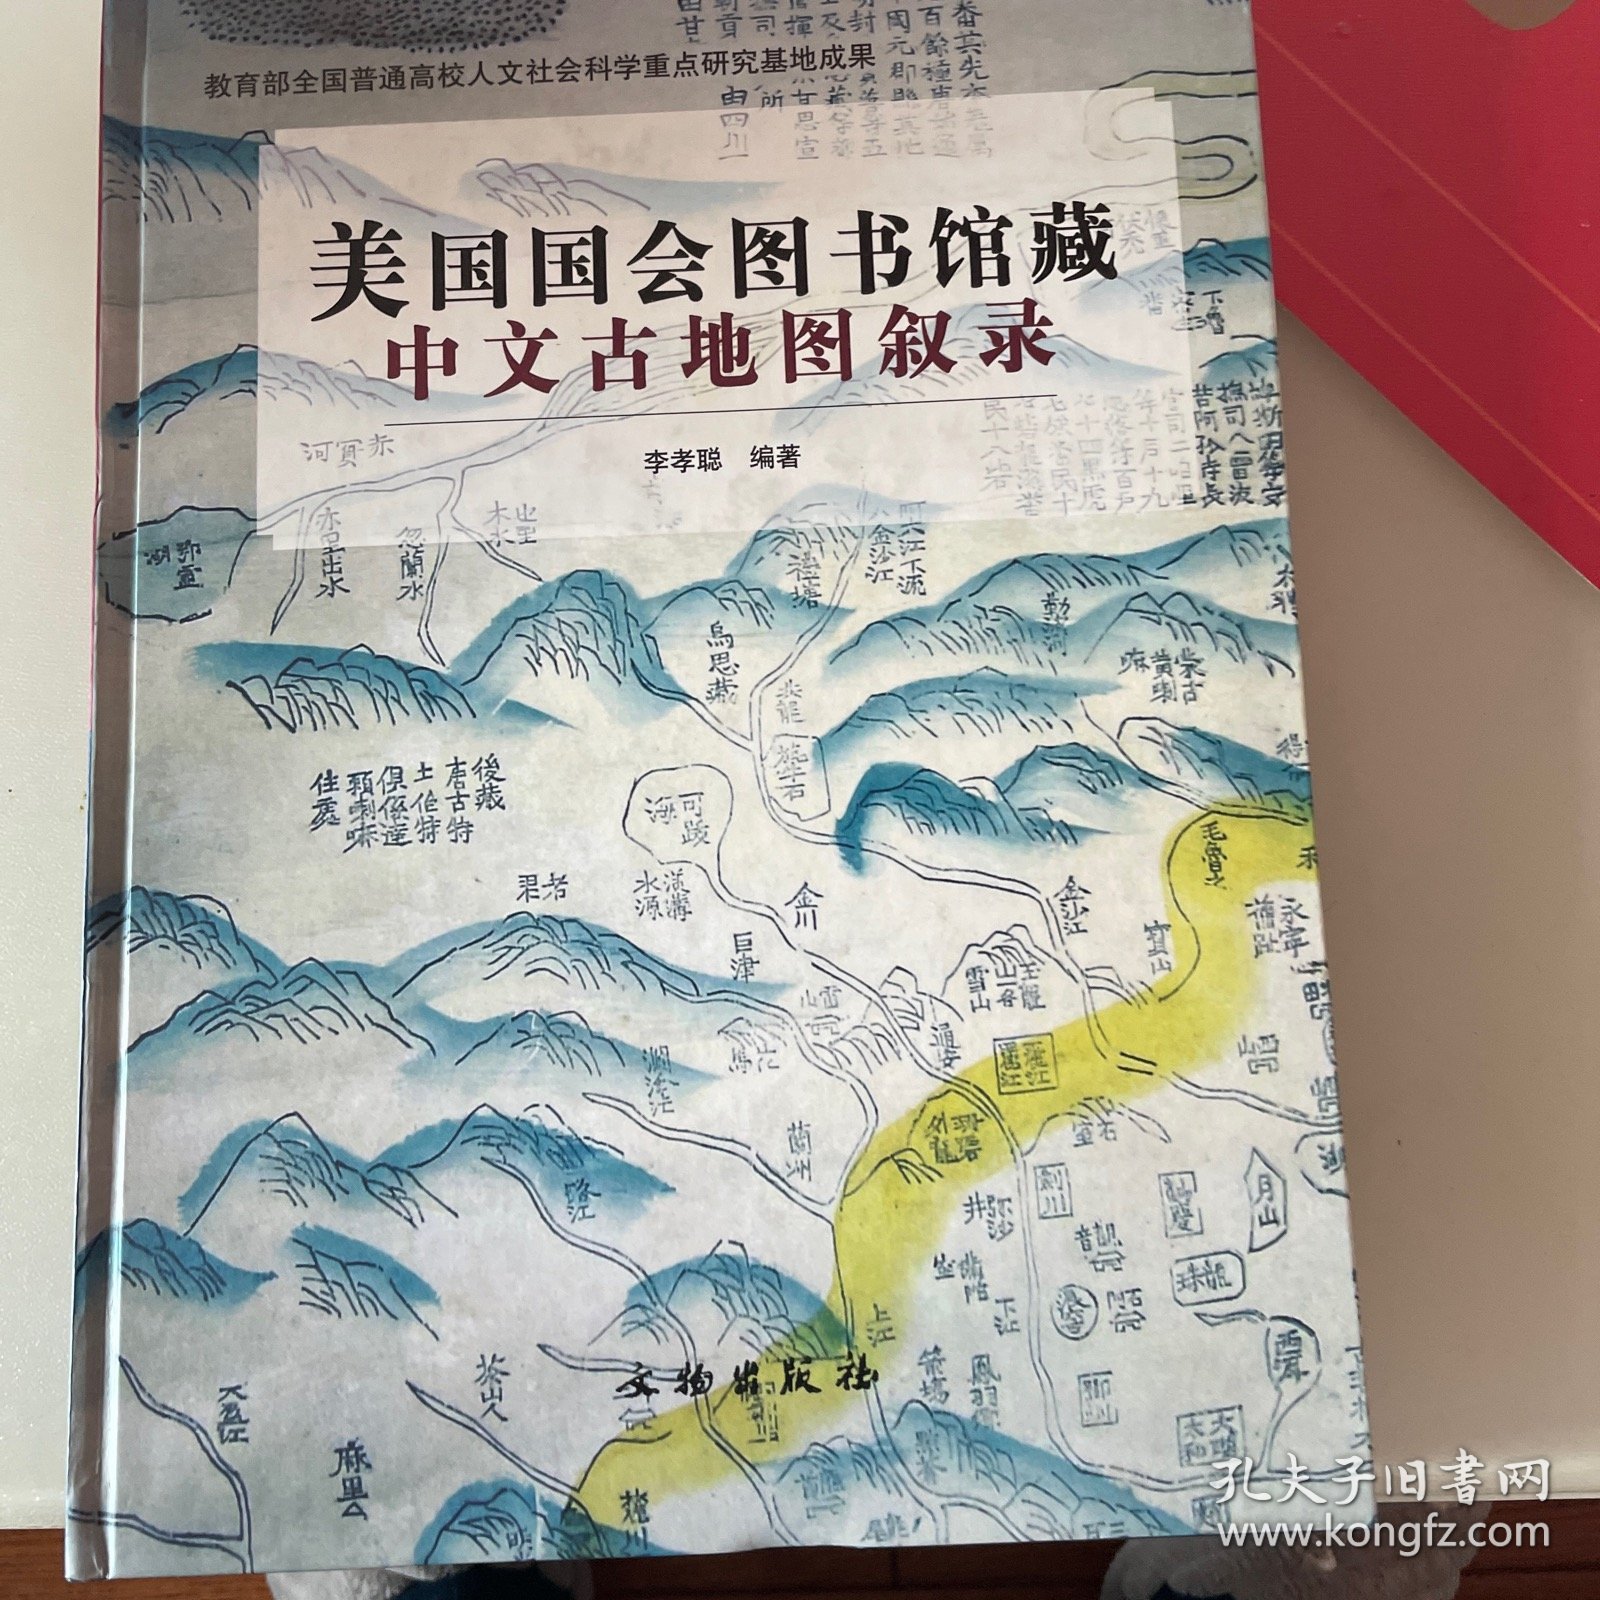 美国国会图书馆藏中文古地图叙录